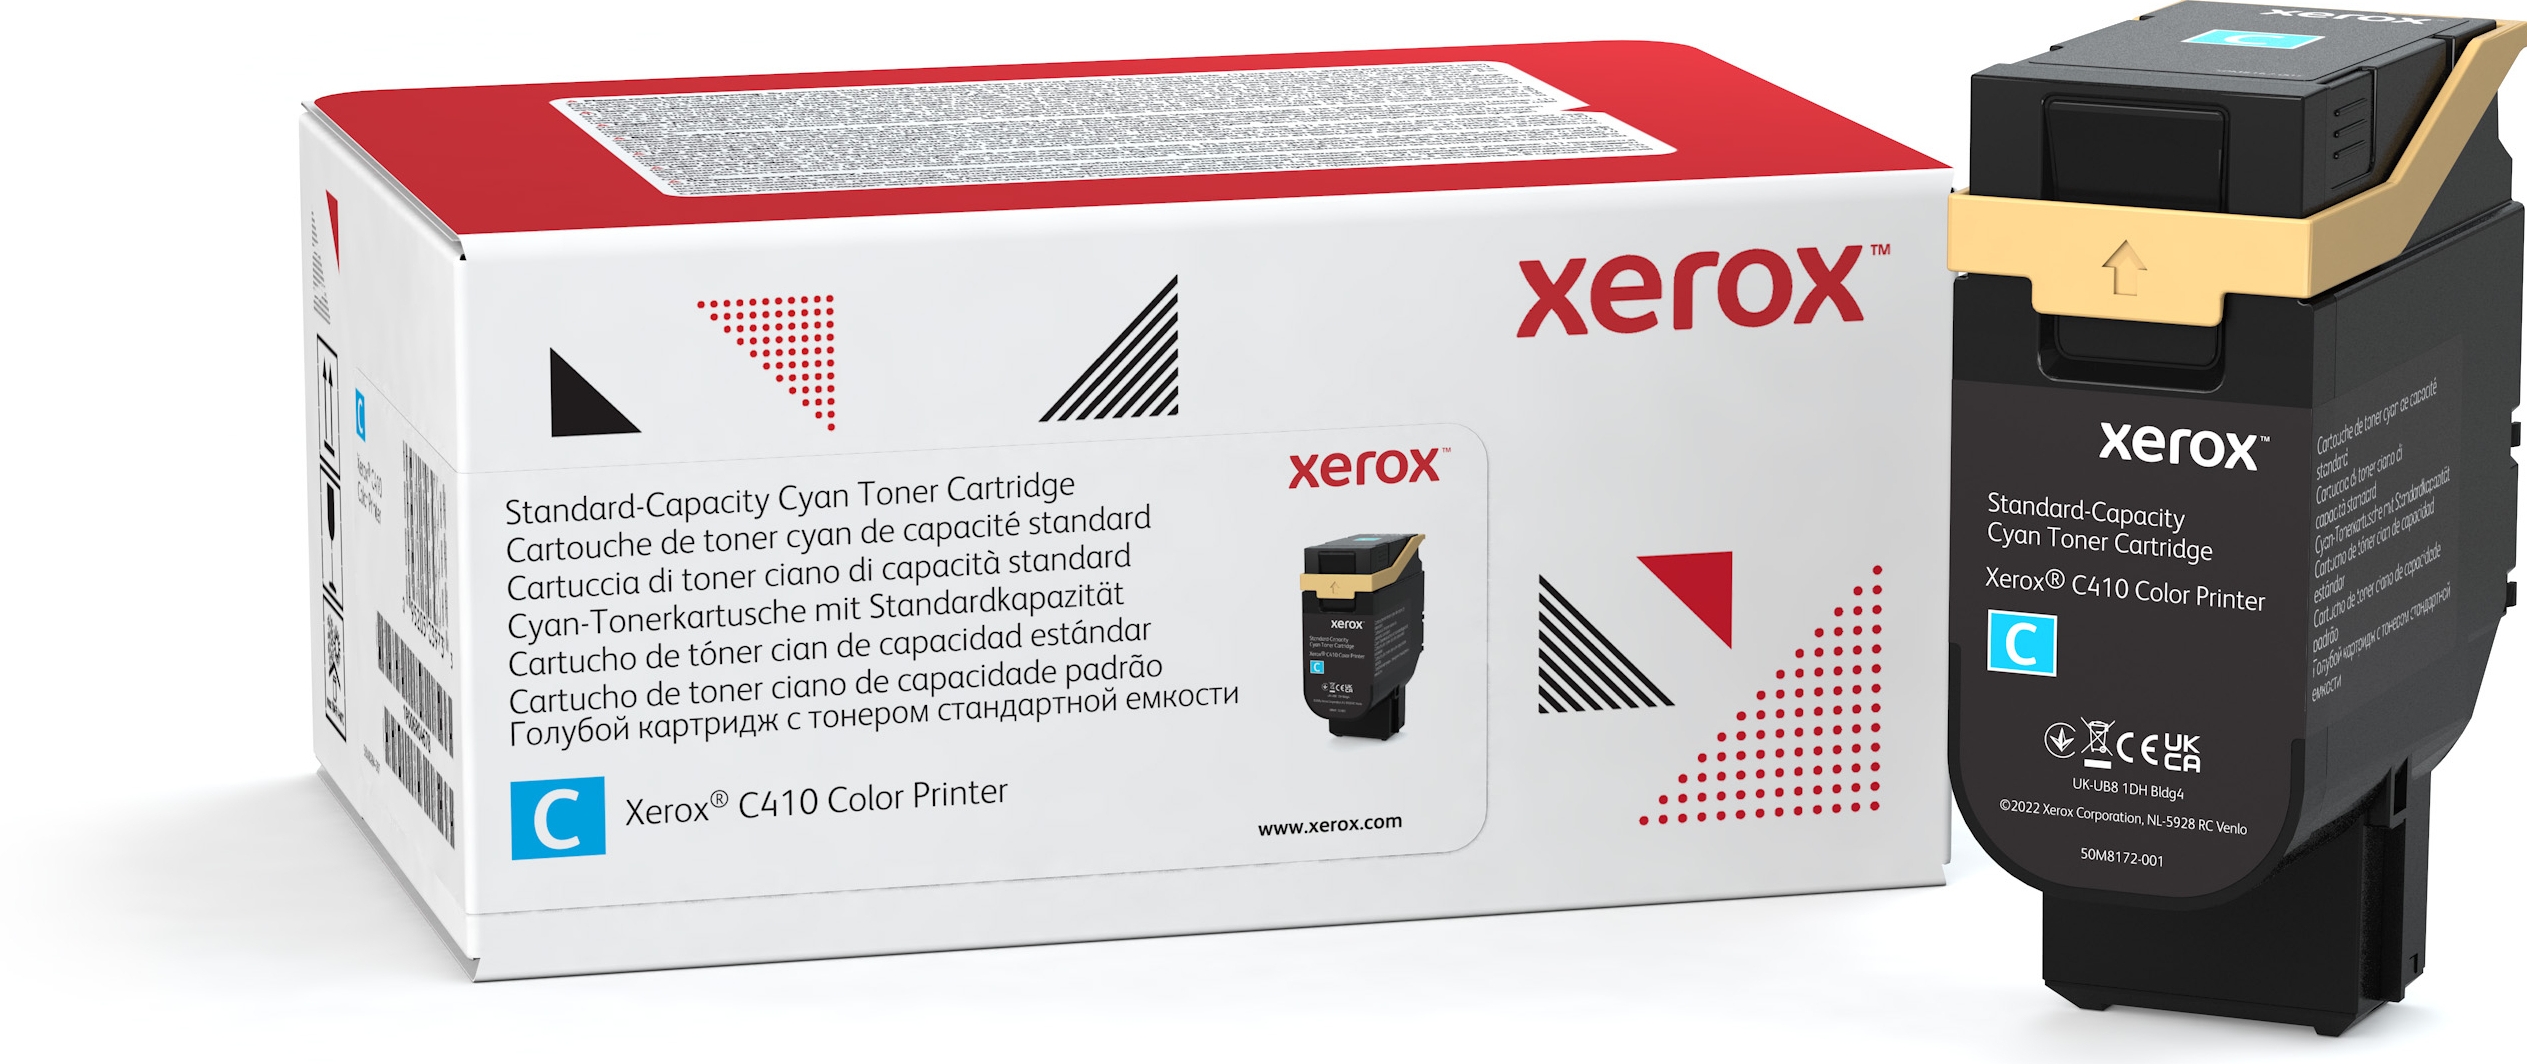 Xerox VersaLink C410/C415 cassette cyaan toner standaardcapaciteit (2.000 pagina's), 2000 pagina's, Cyaan, 1 stuk(s)